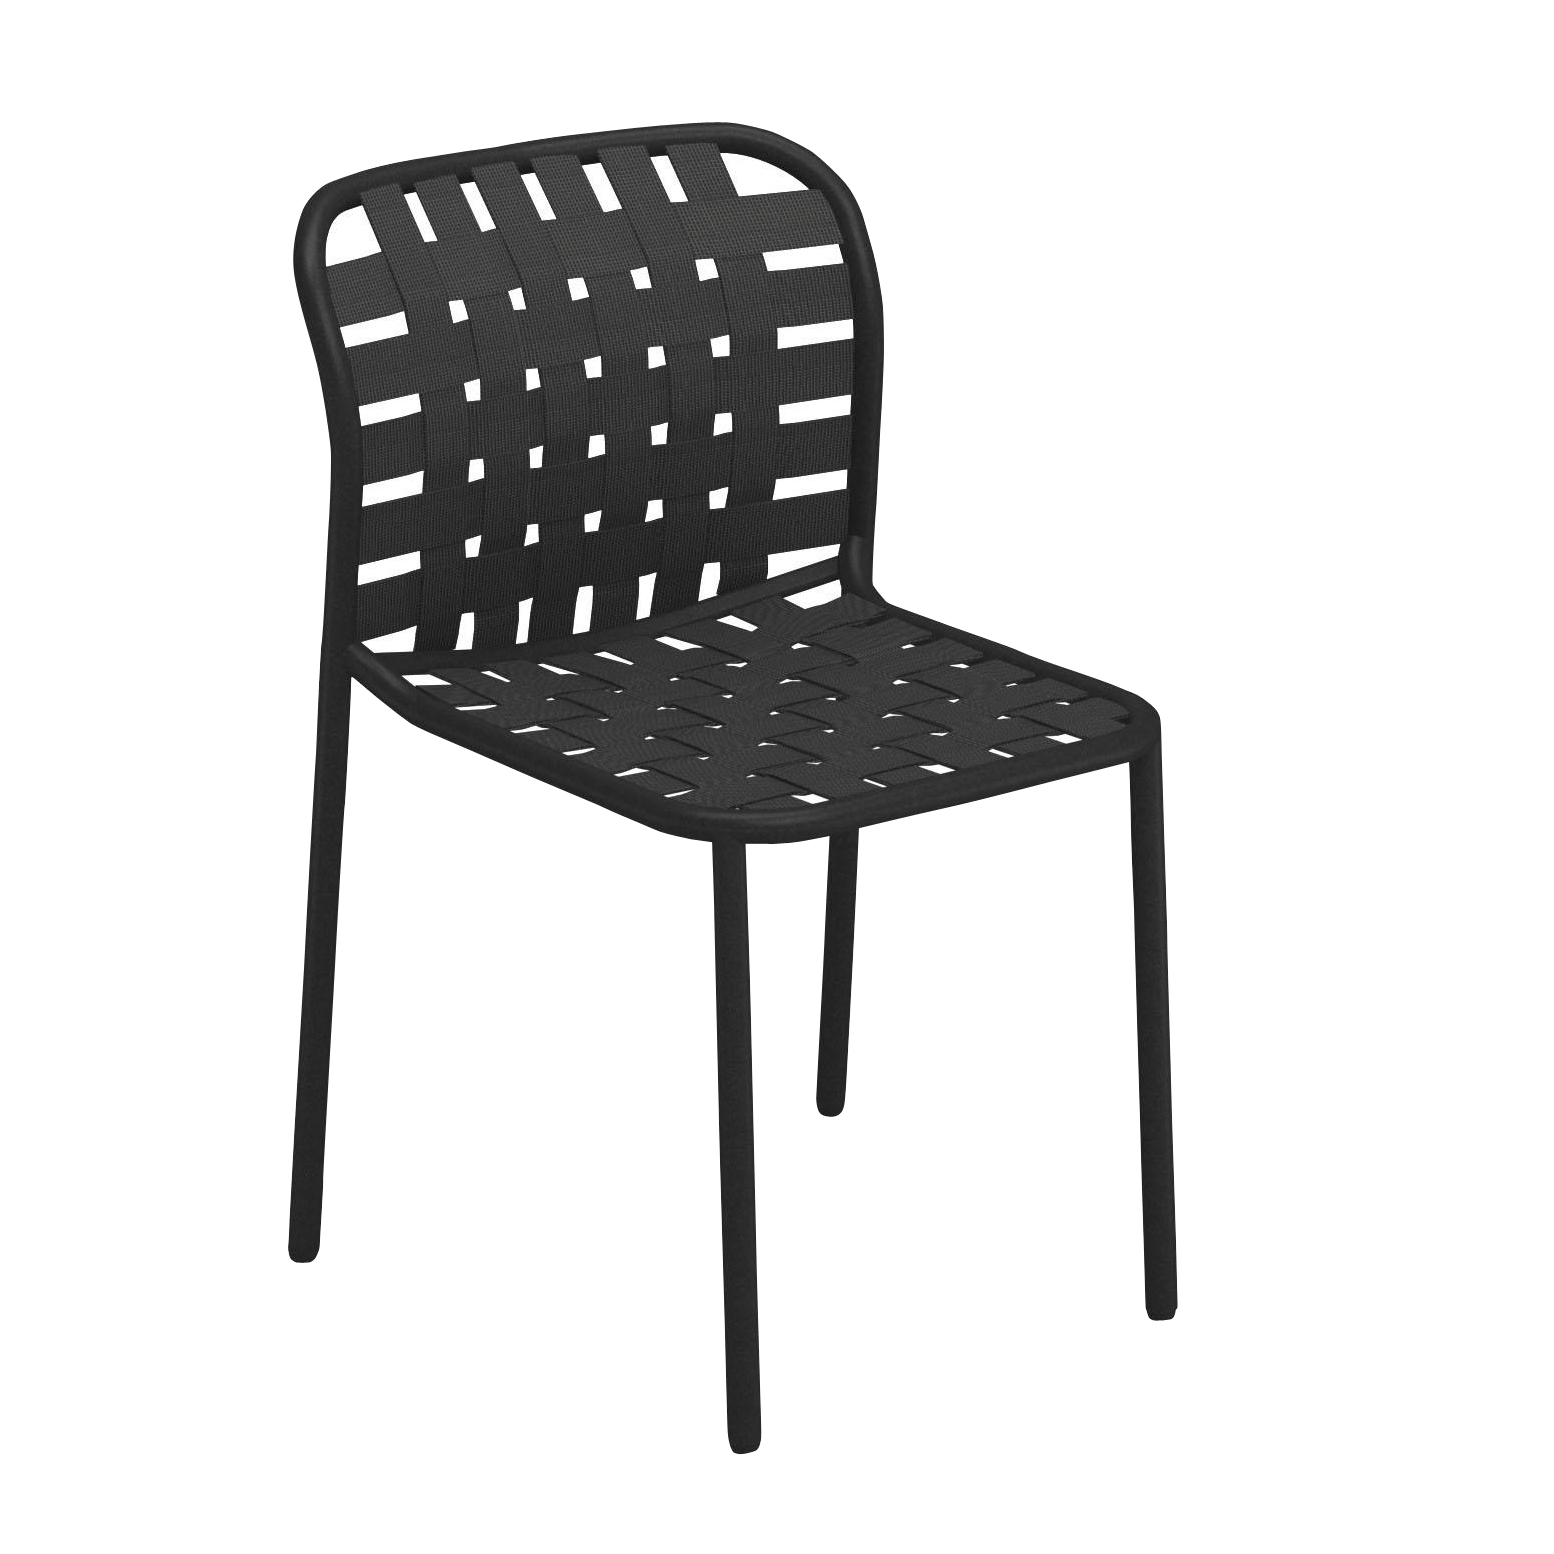 emu - Yard Gartenstuhl - schwarz, grauschwarz/Sitz elastische Gurte grauschwarz/BxHxT 51x81x57cm/Gestell schwarz